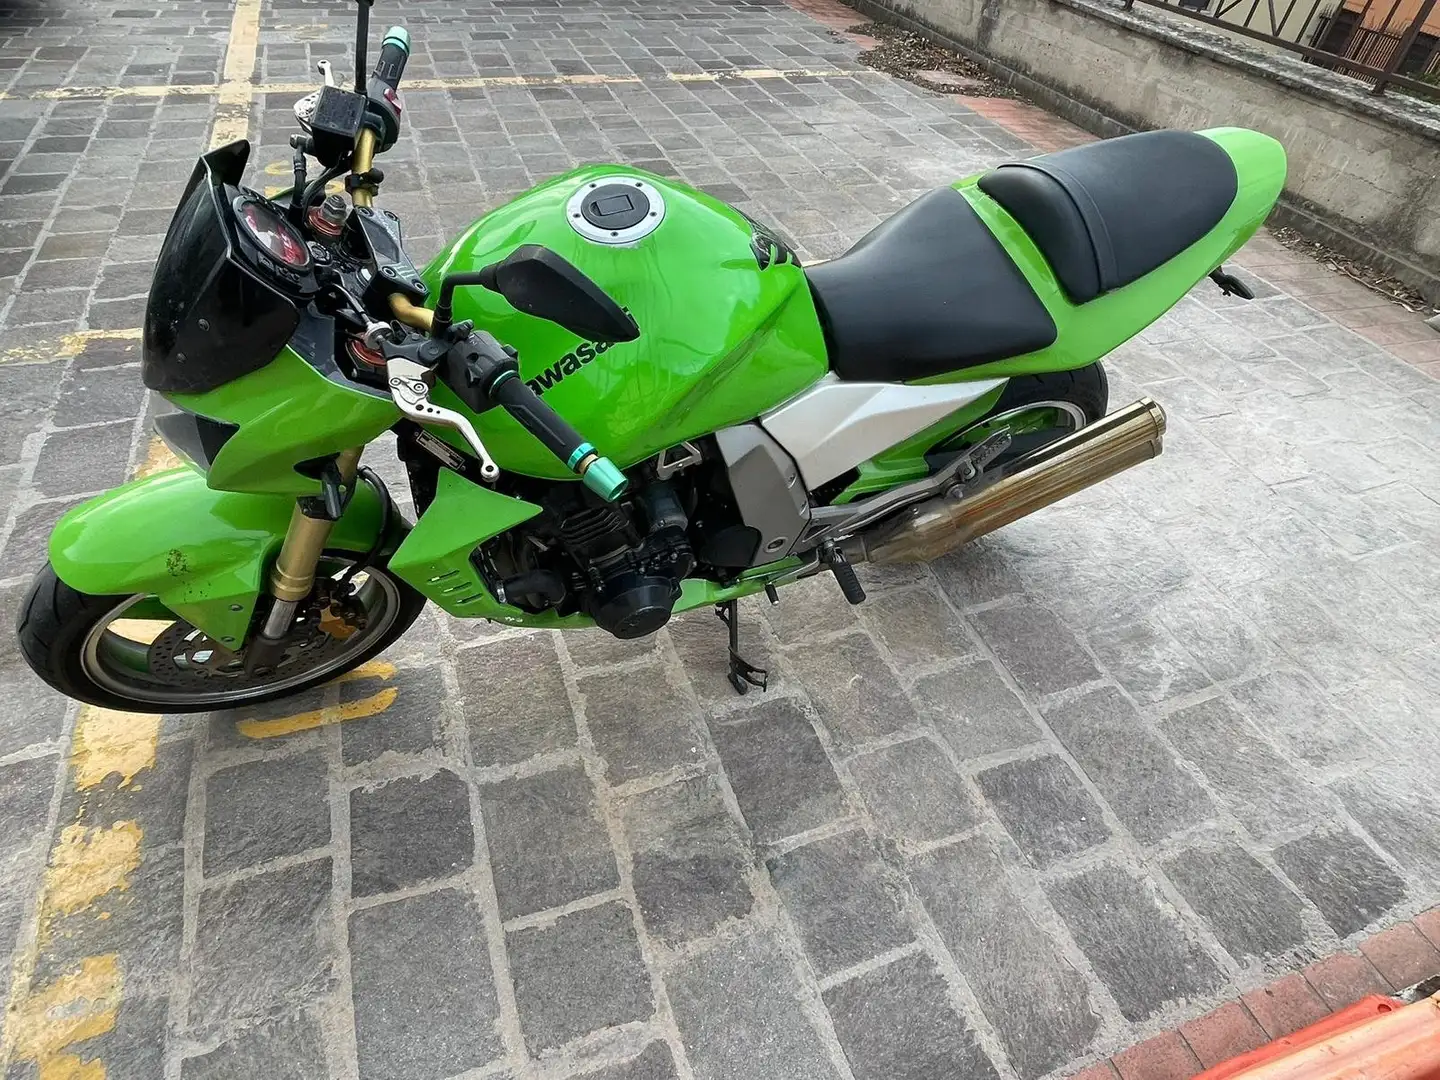 Kawasaki Z 1000 Green - 1